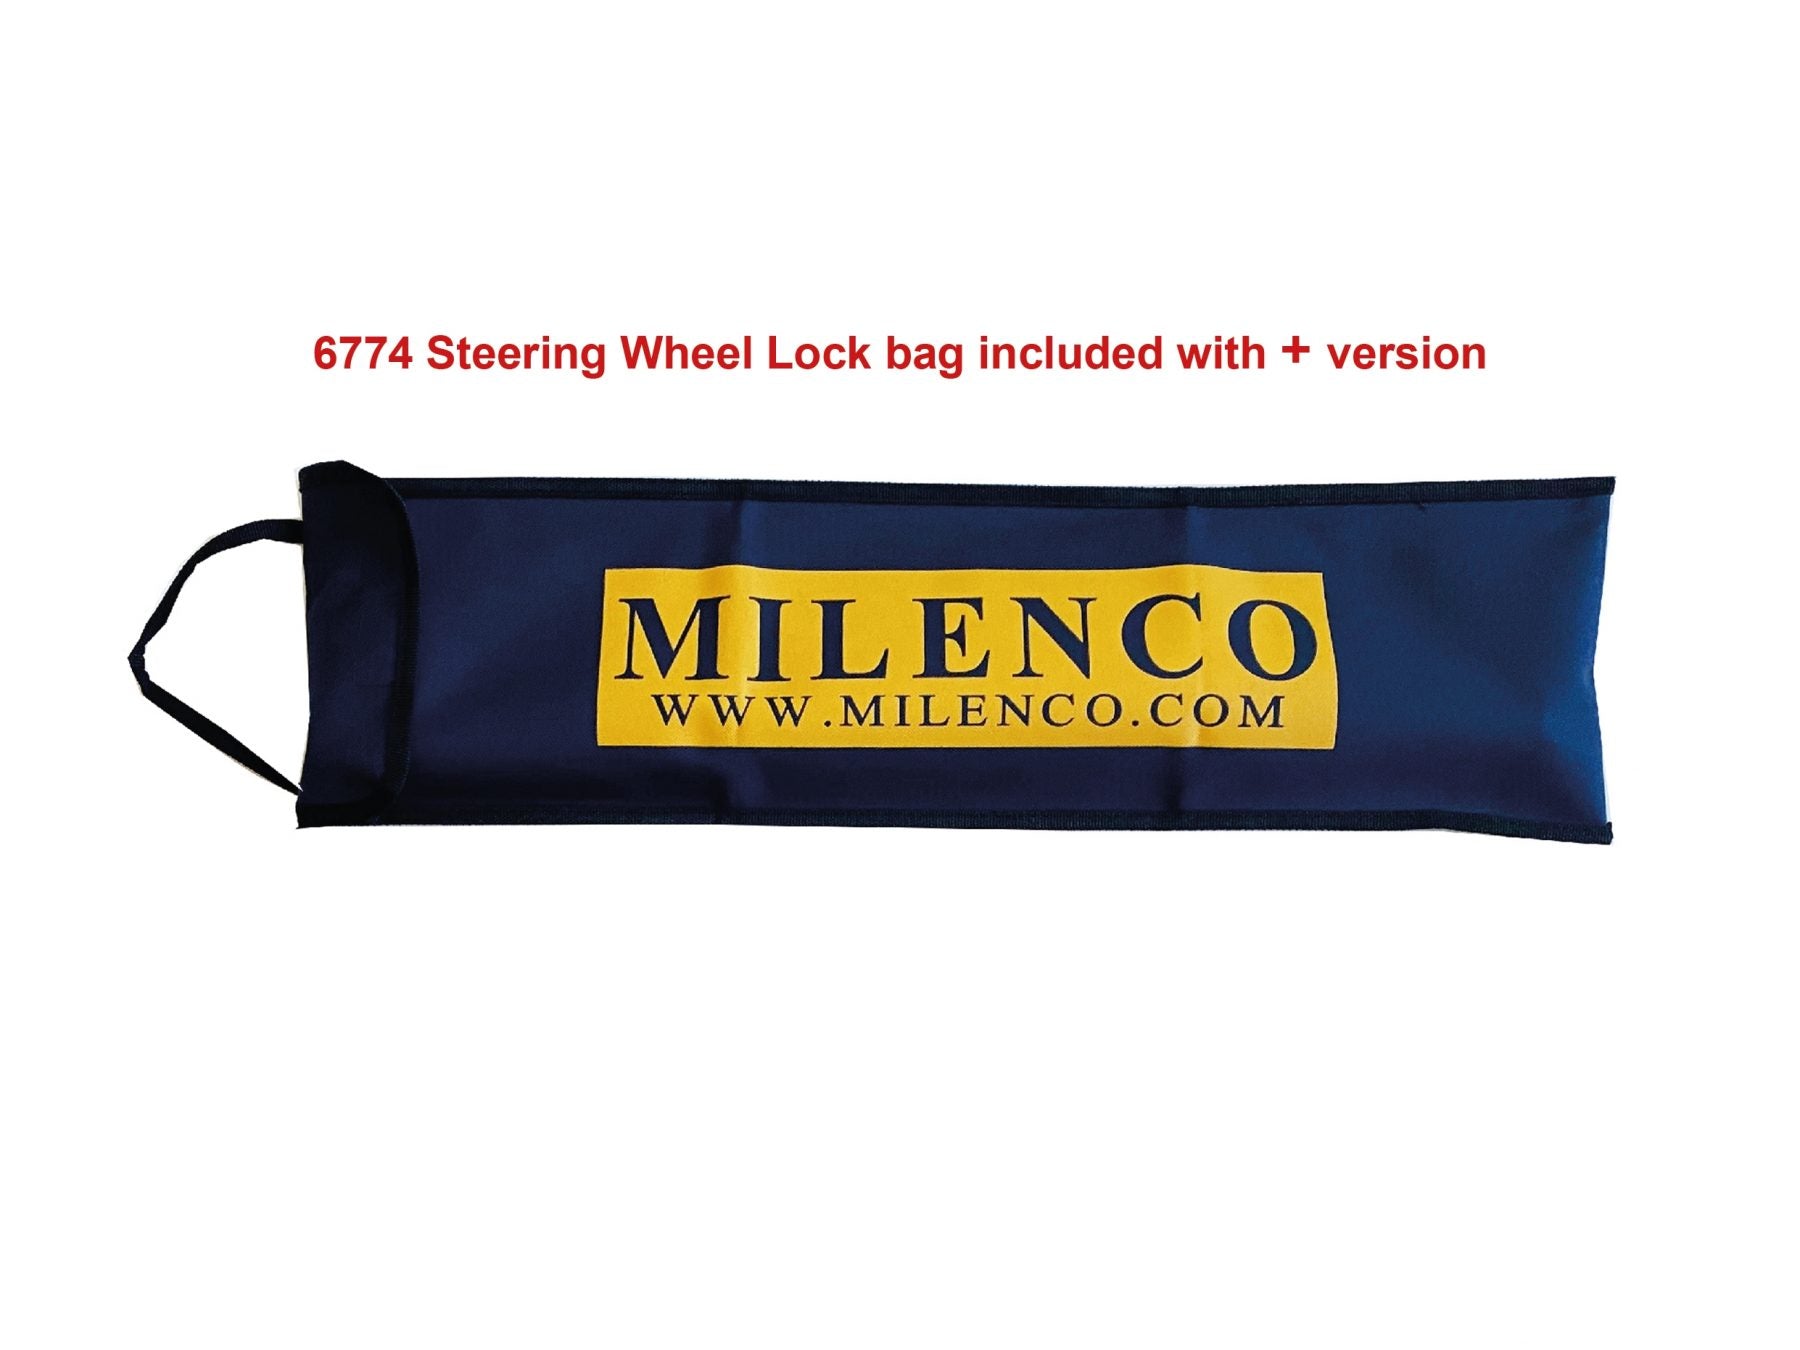 Milenco High Security Steering Wheel Lock Plus